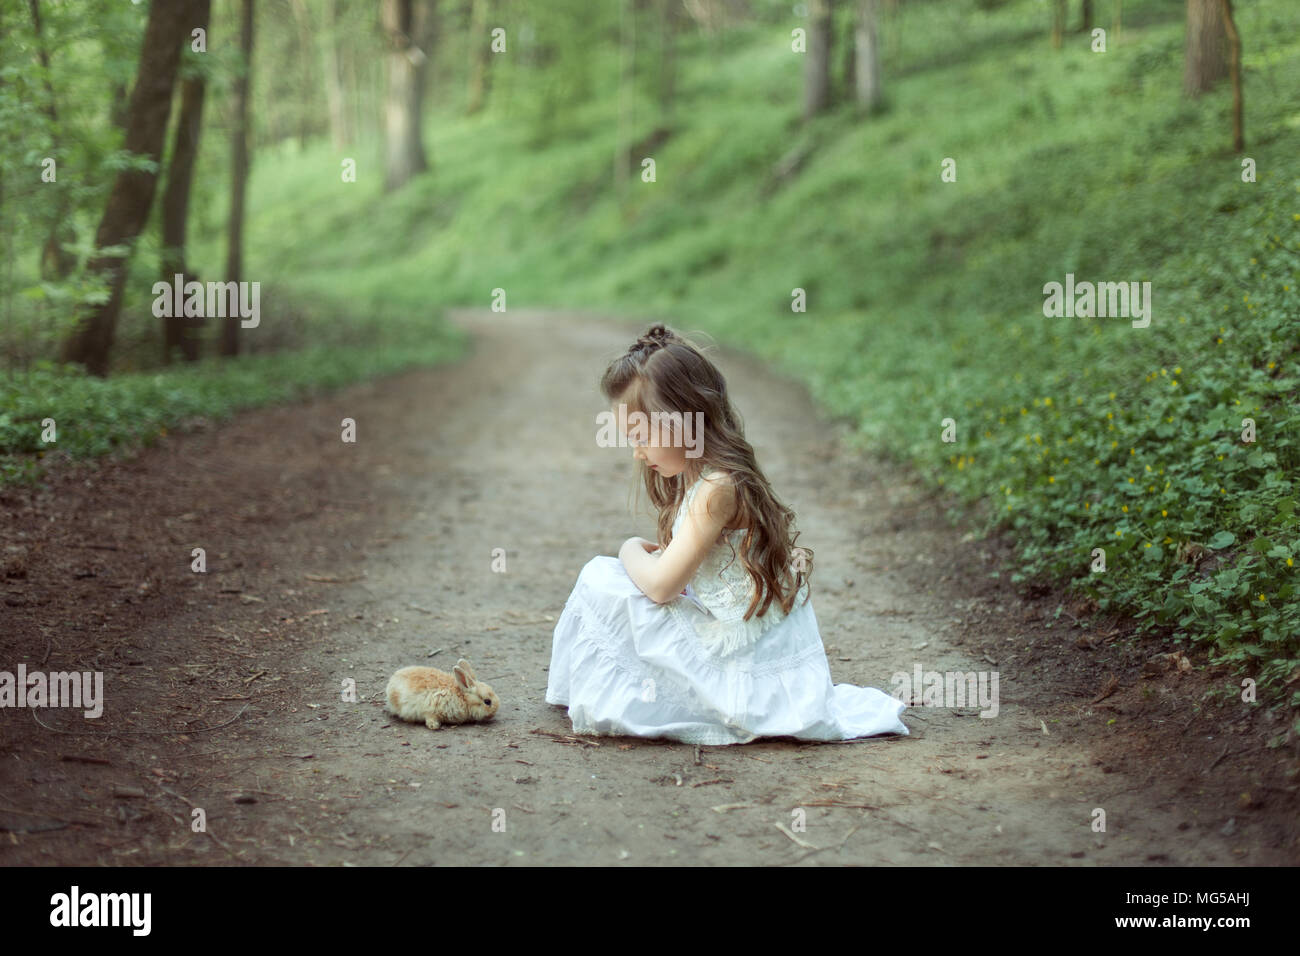 Kleines Mädchen sitzen auf der Straße in den Wald. Vor ihr sitzt ein kleiner Hase. Stockfoto